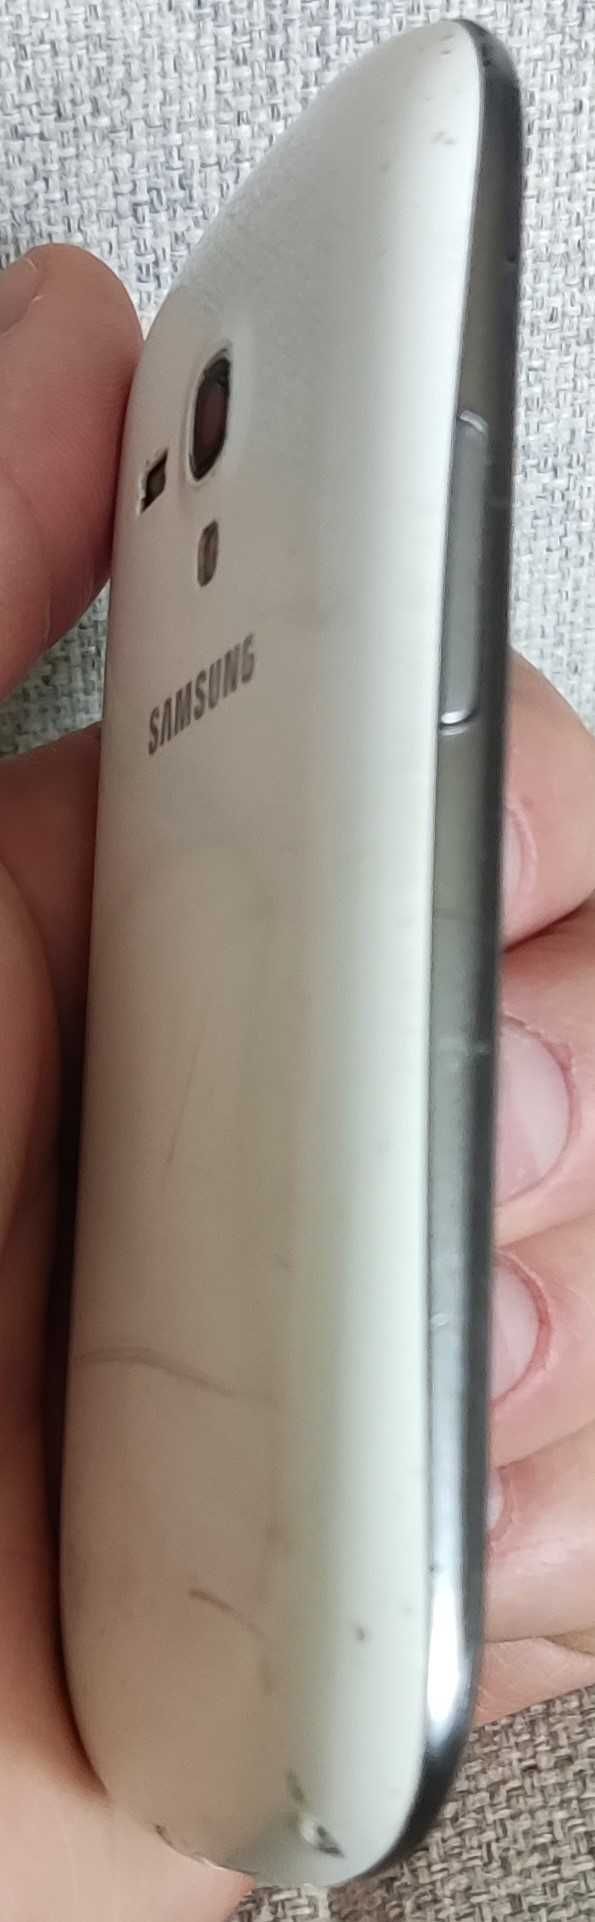 msung Galaxy S3 mini GT-I8200N - biały, 1GB RAM / 8GB, 4"